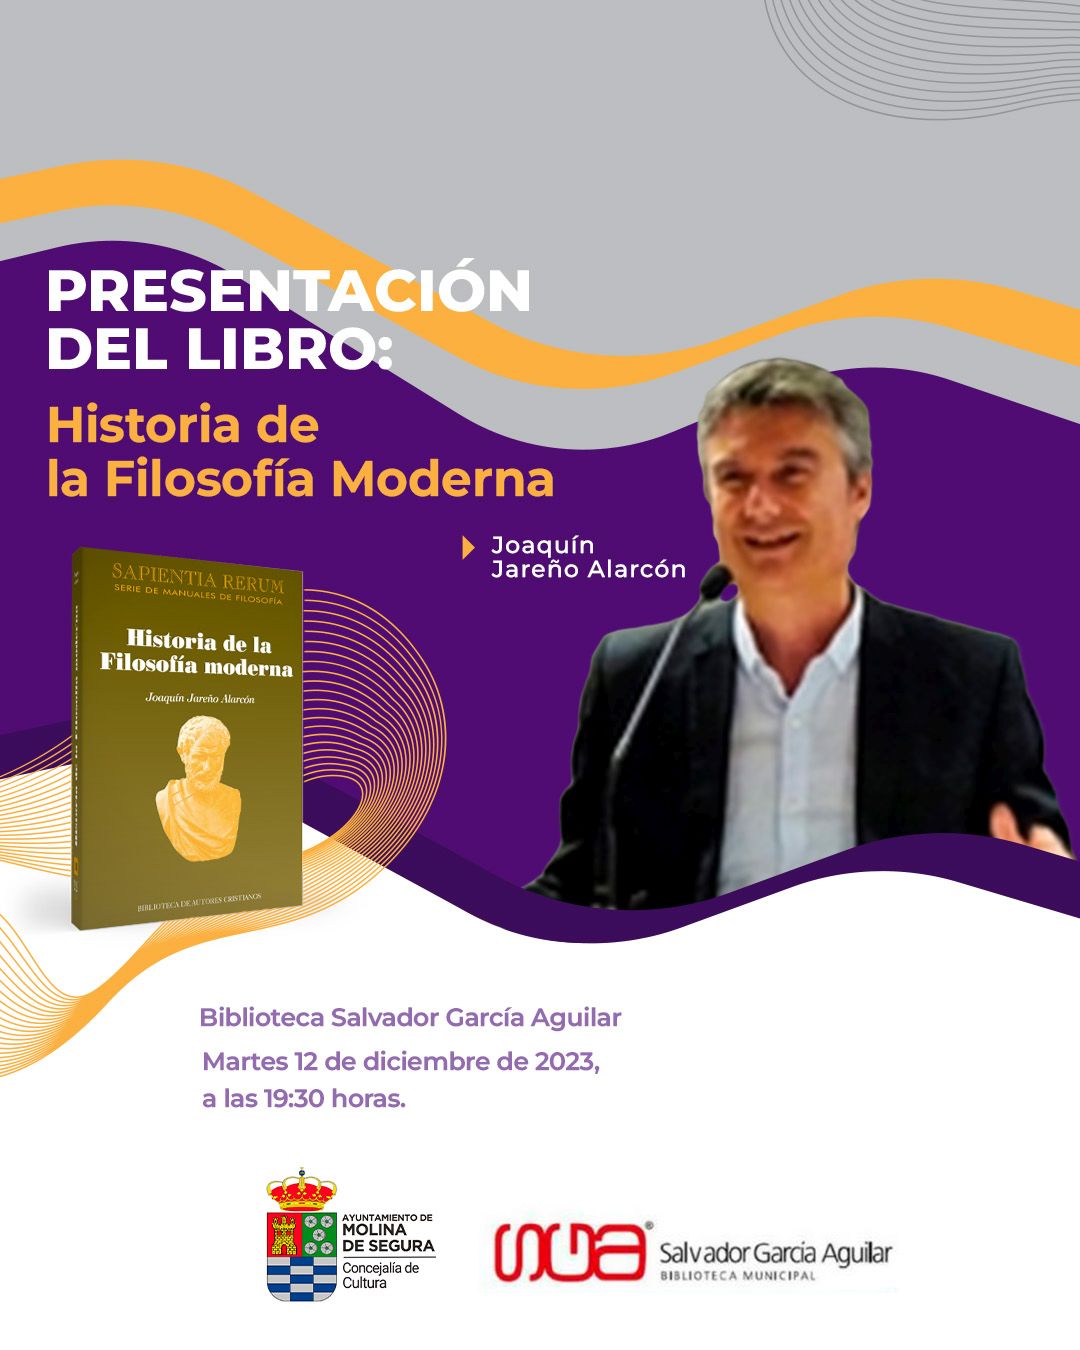 CULTURA | Joaquín Jareño presenta su libro ‘Historia de la Filosofía moderna’ en la Biblioteca ‘Salvador García Aguilar’ de Molina de Segura hoy martes 12 de diciembre